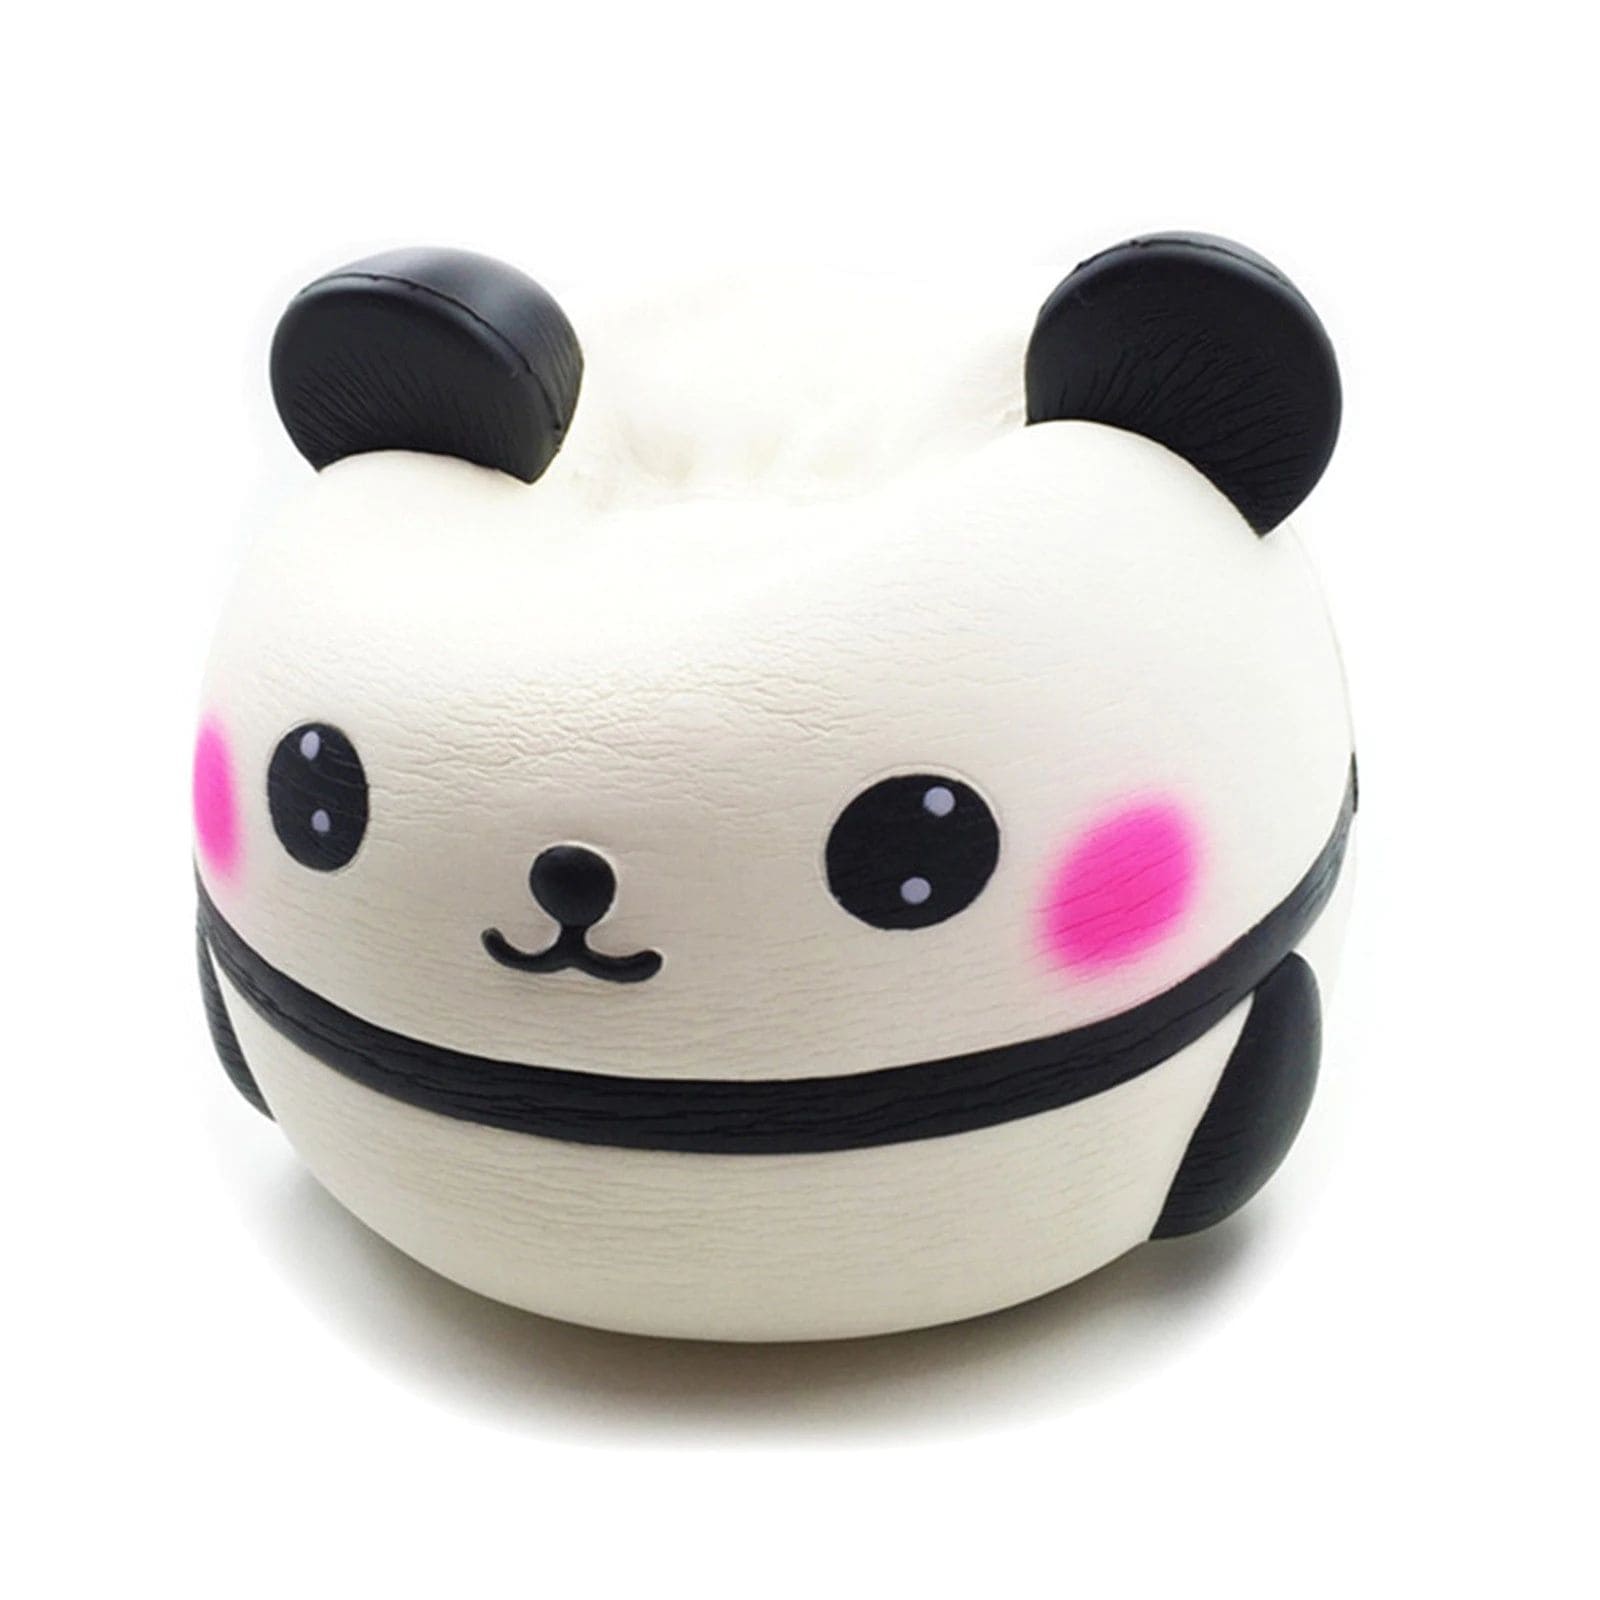 Fidget Toys - Knuffiger Panda (13 cm) zum Drücken und Kneten | Maicona